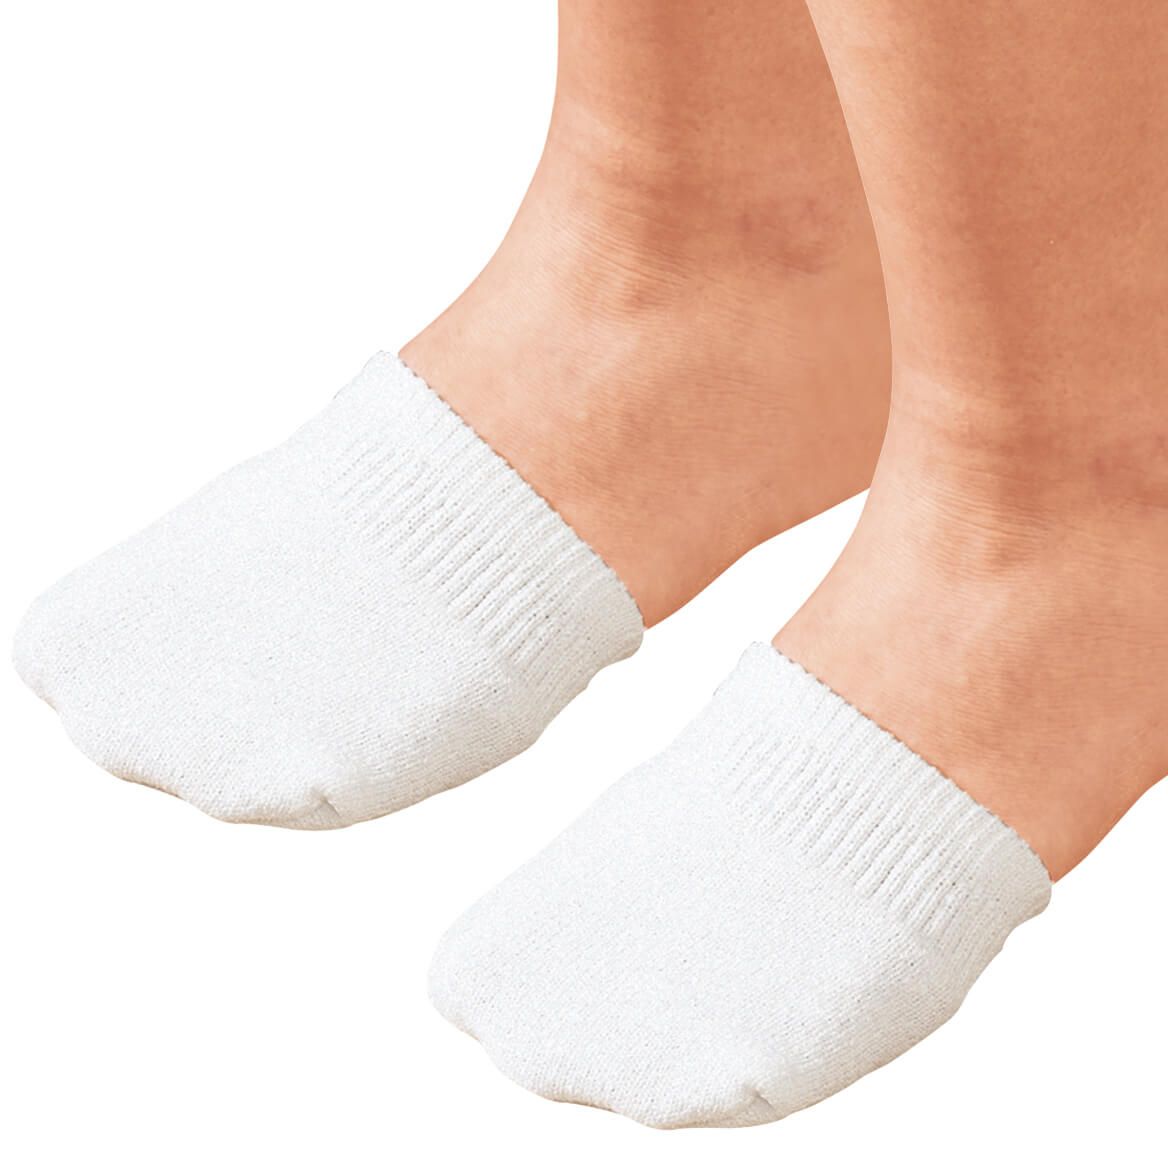 Toe Half Socks 2 Pair - White + '-' + 311438